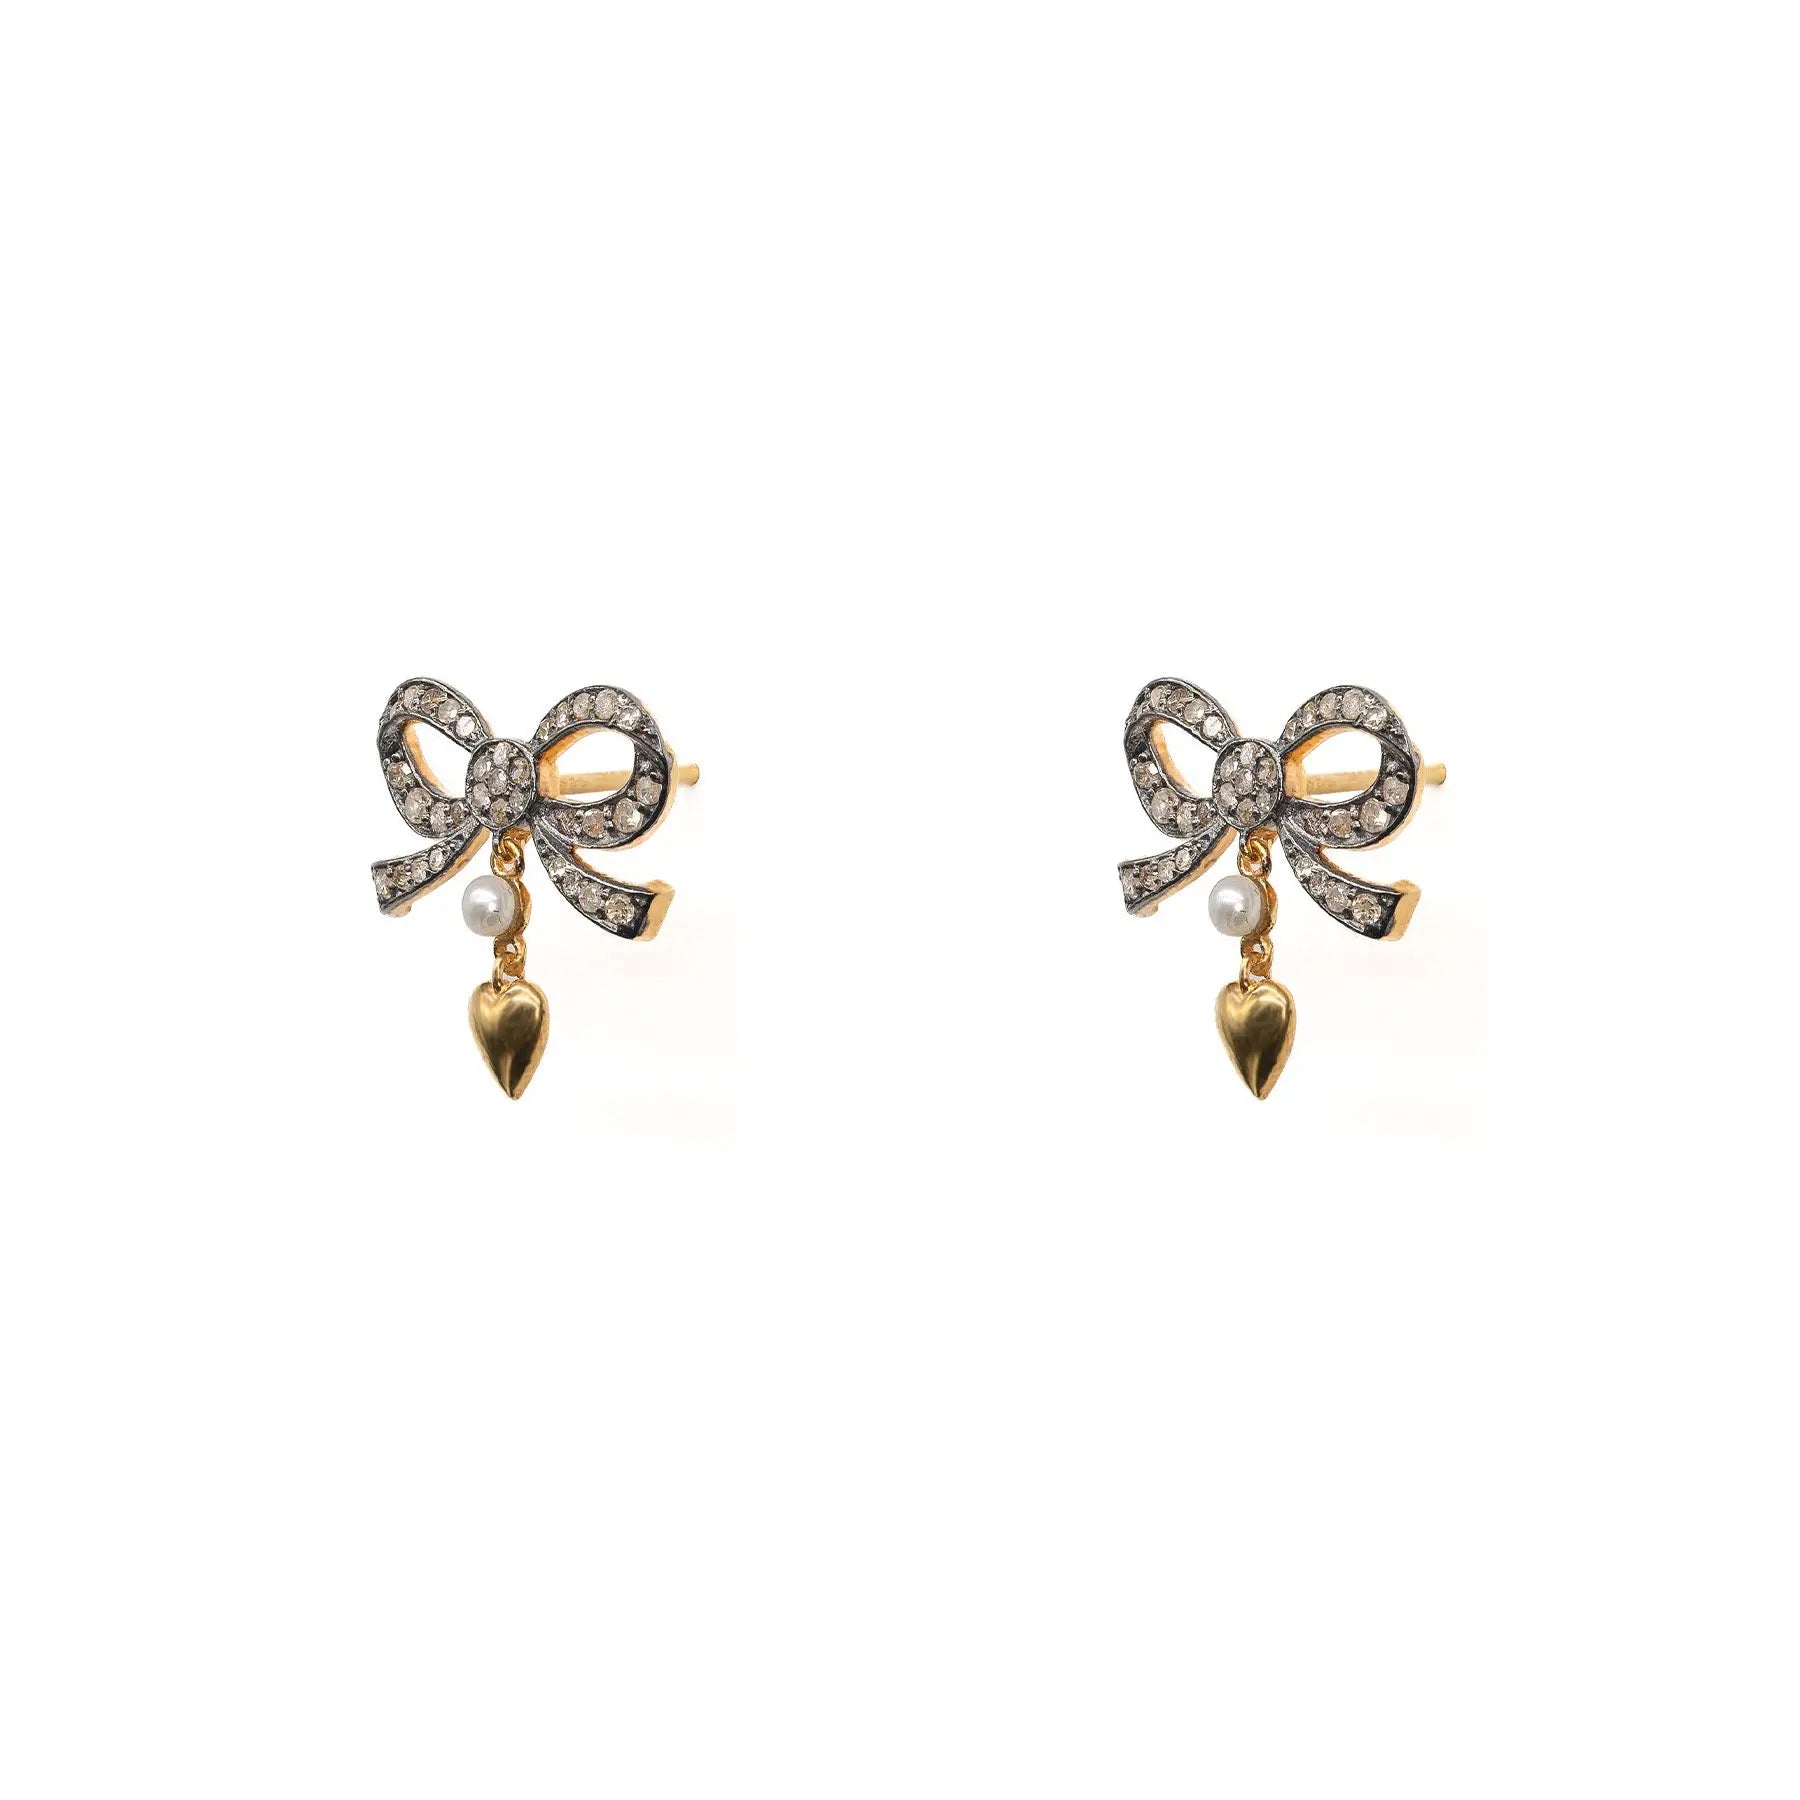 The Elizabeth Diamond Bow Earrings